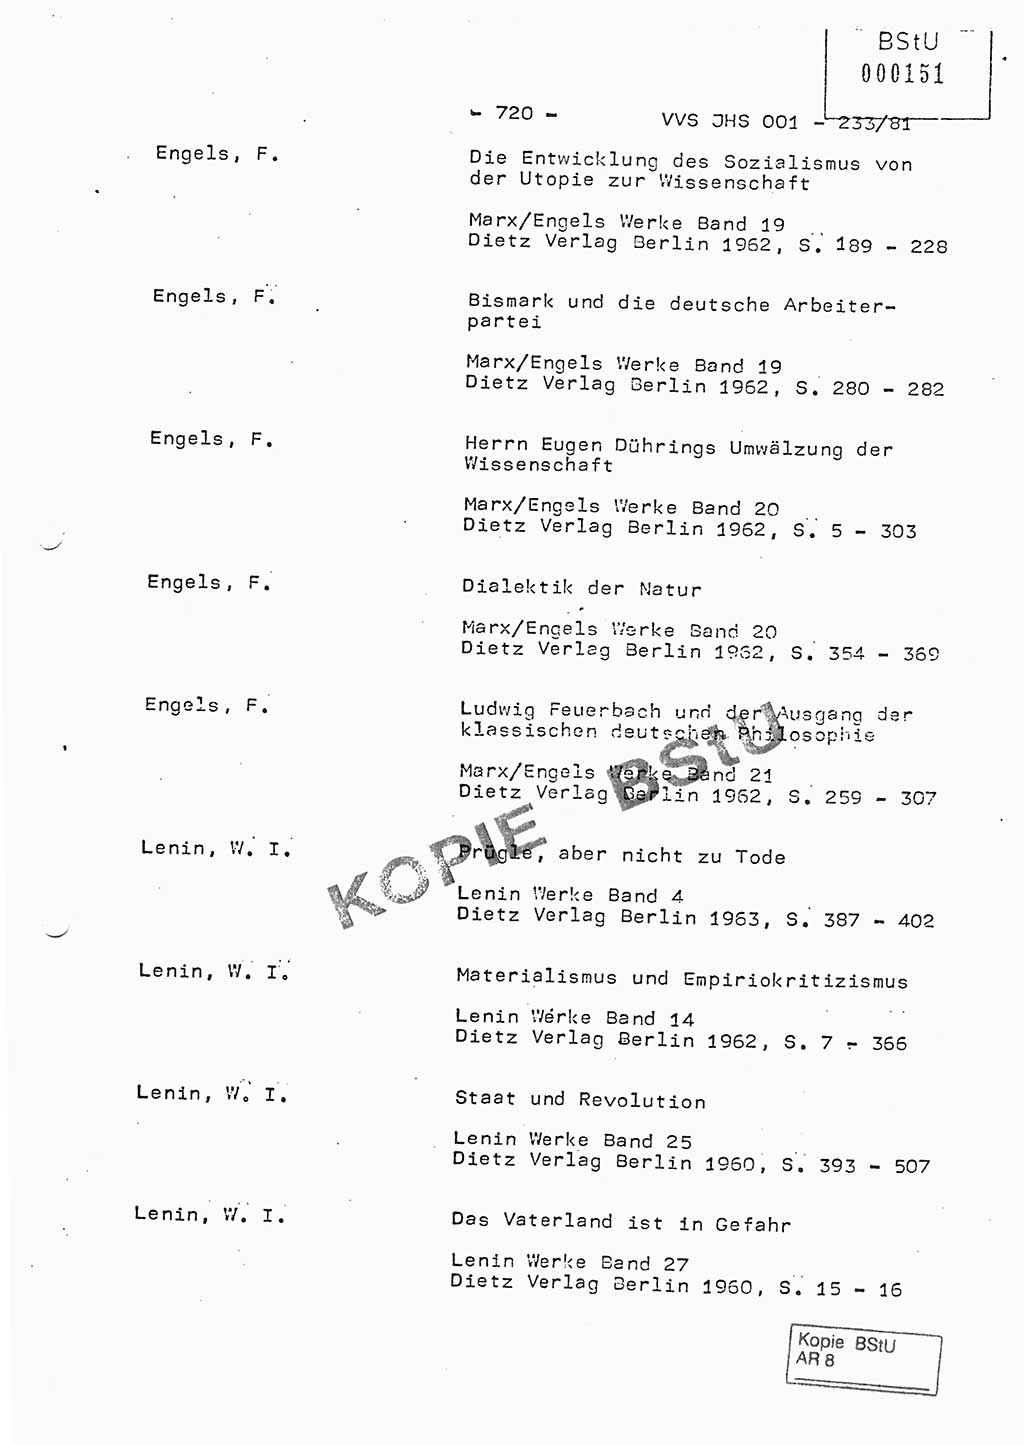 Dissertation Oberstleutnant Horst Zank (JHS), Oberstleutnant Dr. Karl-Heinz Knoblauch (JHS), Oberstleutnant Gustav-Adolf Kowalewski (HA Ⅸ), Oberstleutnant Wolfgang Plötner (HA Ⅸ), Ministerium für Staatssicherheit (MfS) [Deutsche Demokratische Republik (DDR)], Juristische Hochschule (JHS), Vertrauliche Verschlußsache (VVS) o001-233/81, Potsdam 1981, Blatt 720 (Diss. MfS DDR JHS VVS o001-233/81 1981, Bl. 720)